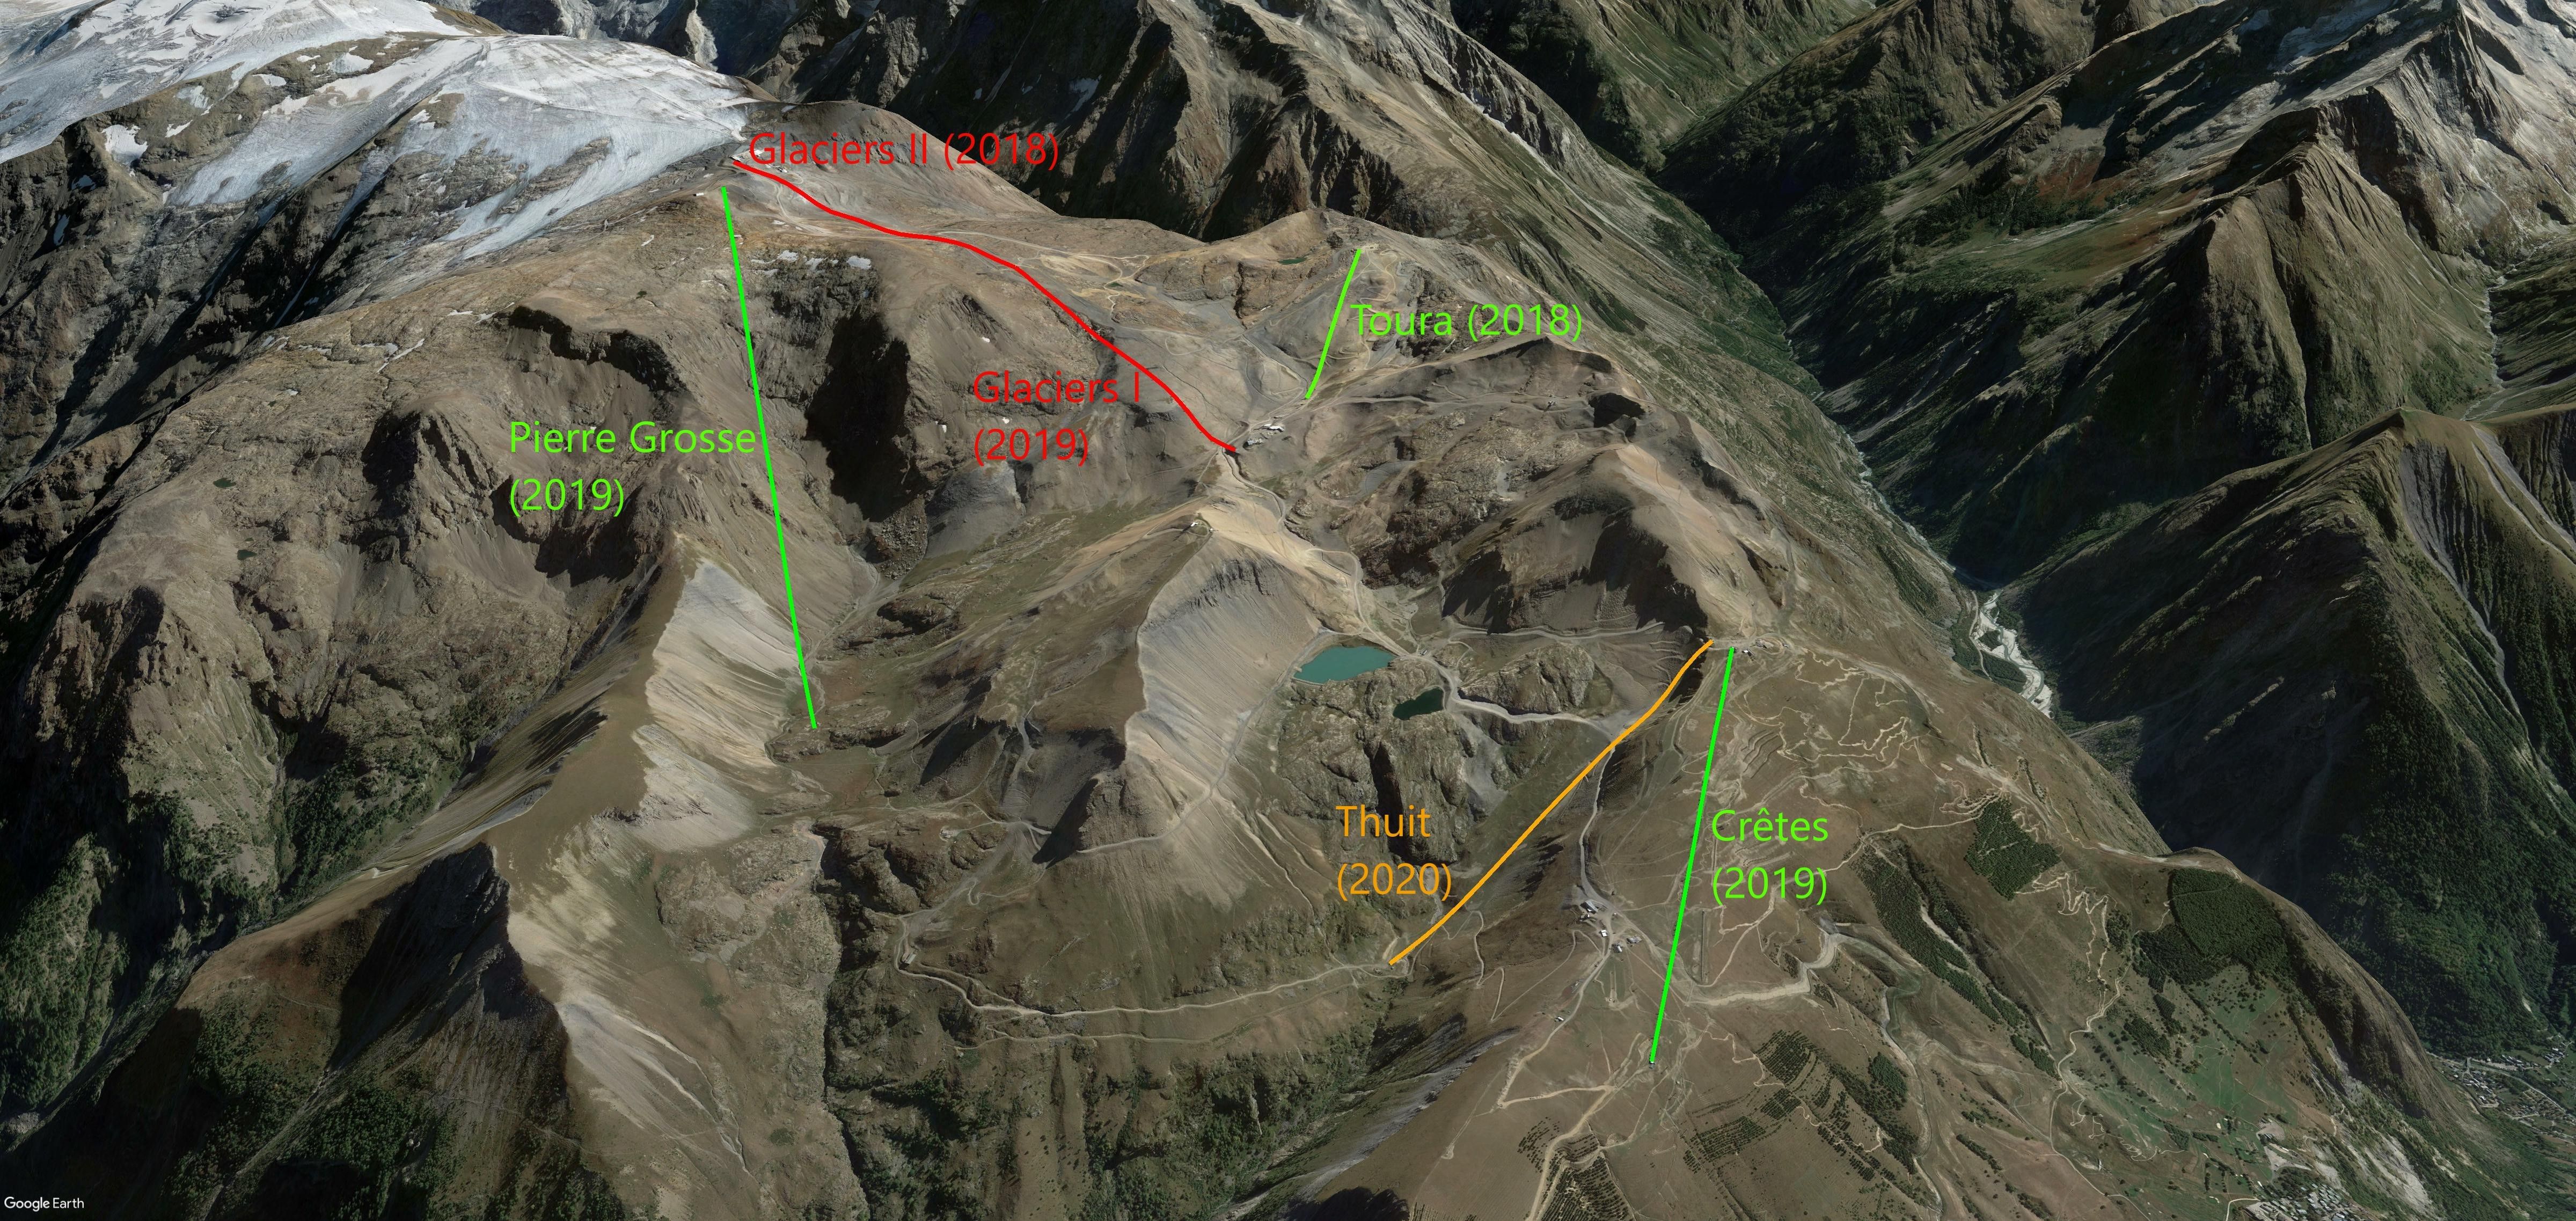 Een overzicht van alle veranderingen in Les Deux Alpes. De ontmanteling van de Glaciers I (2019) en Glaciers II (2018) stoeltjeslift en de bouw van de Toura (2018), Crêtes (2019), Pierre Grosse (2019) en Thuit (2020) liften